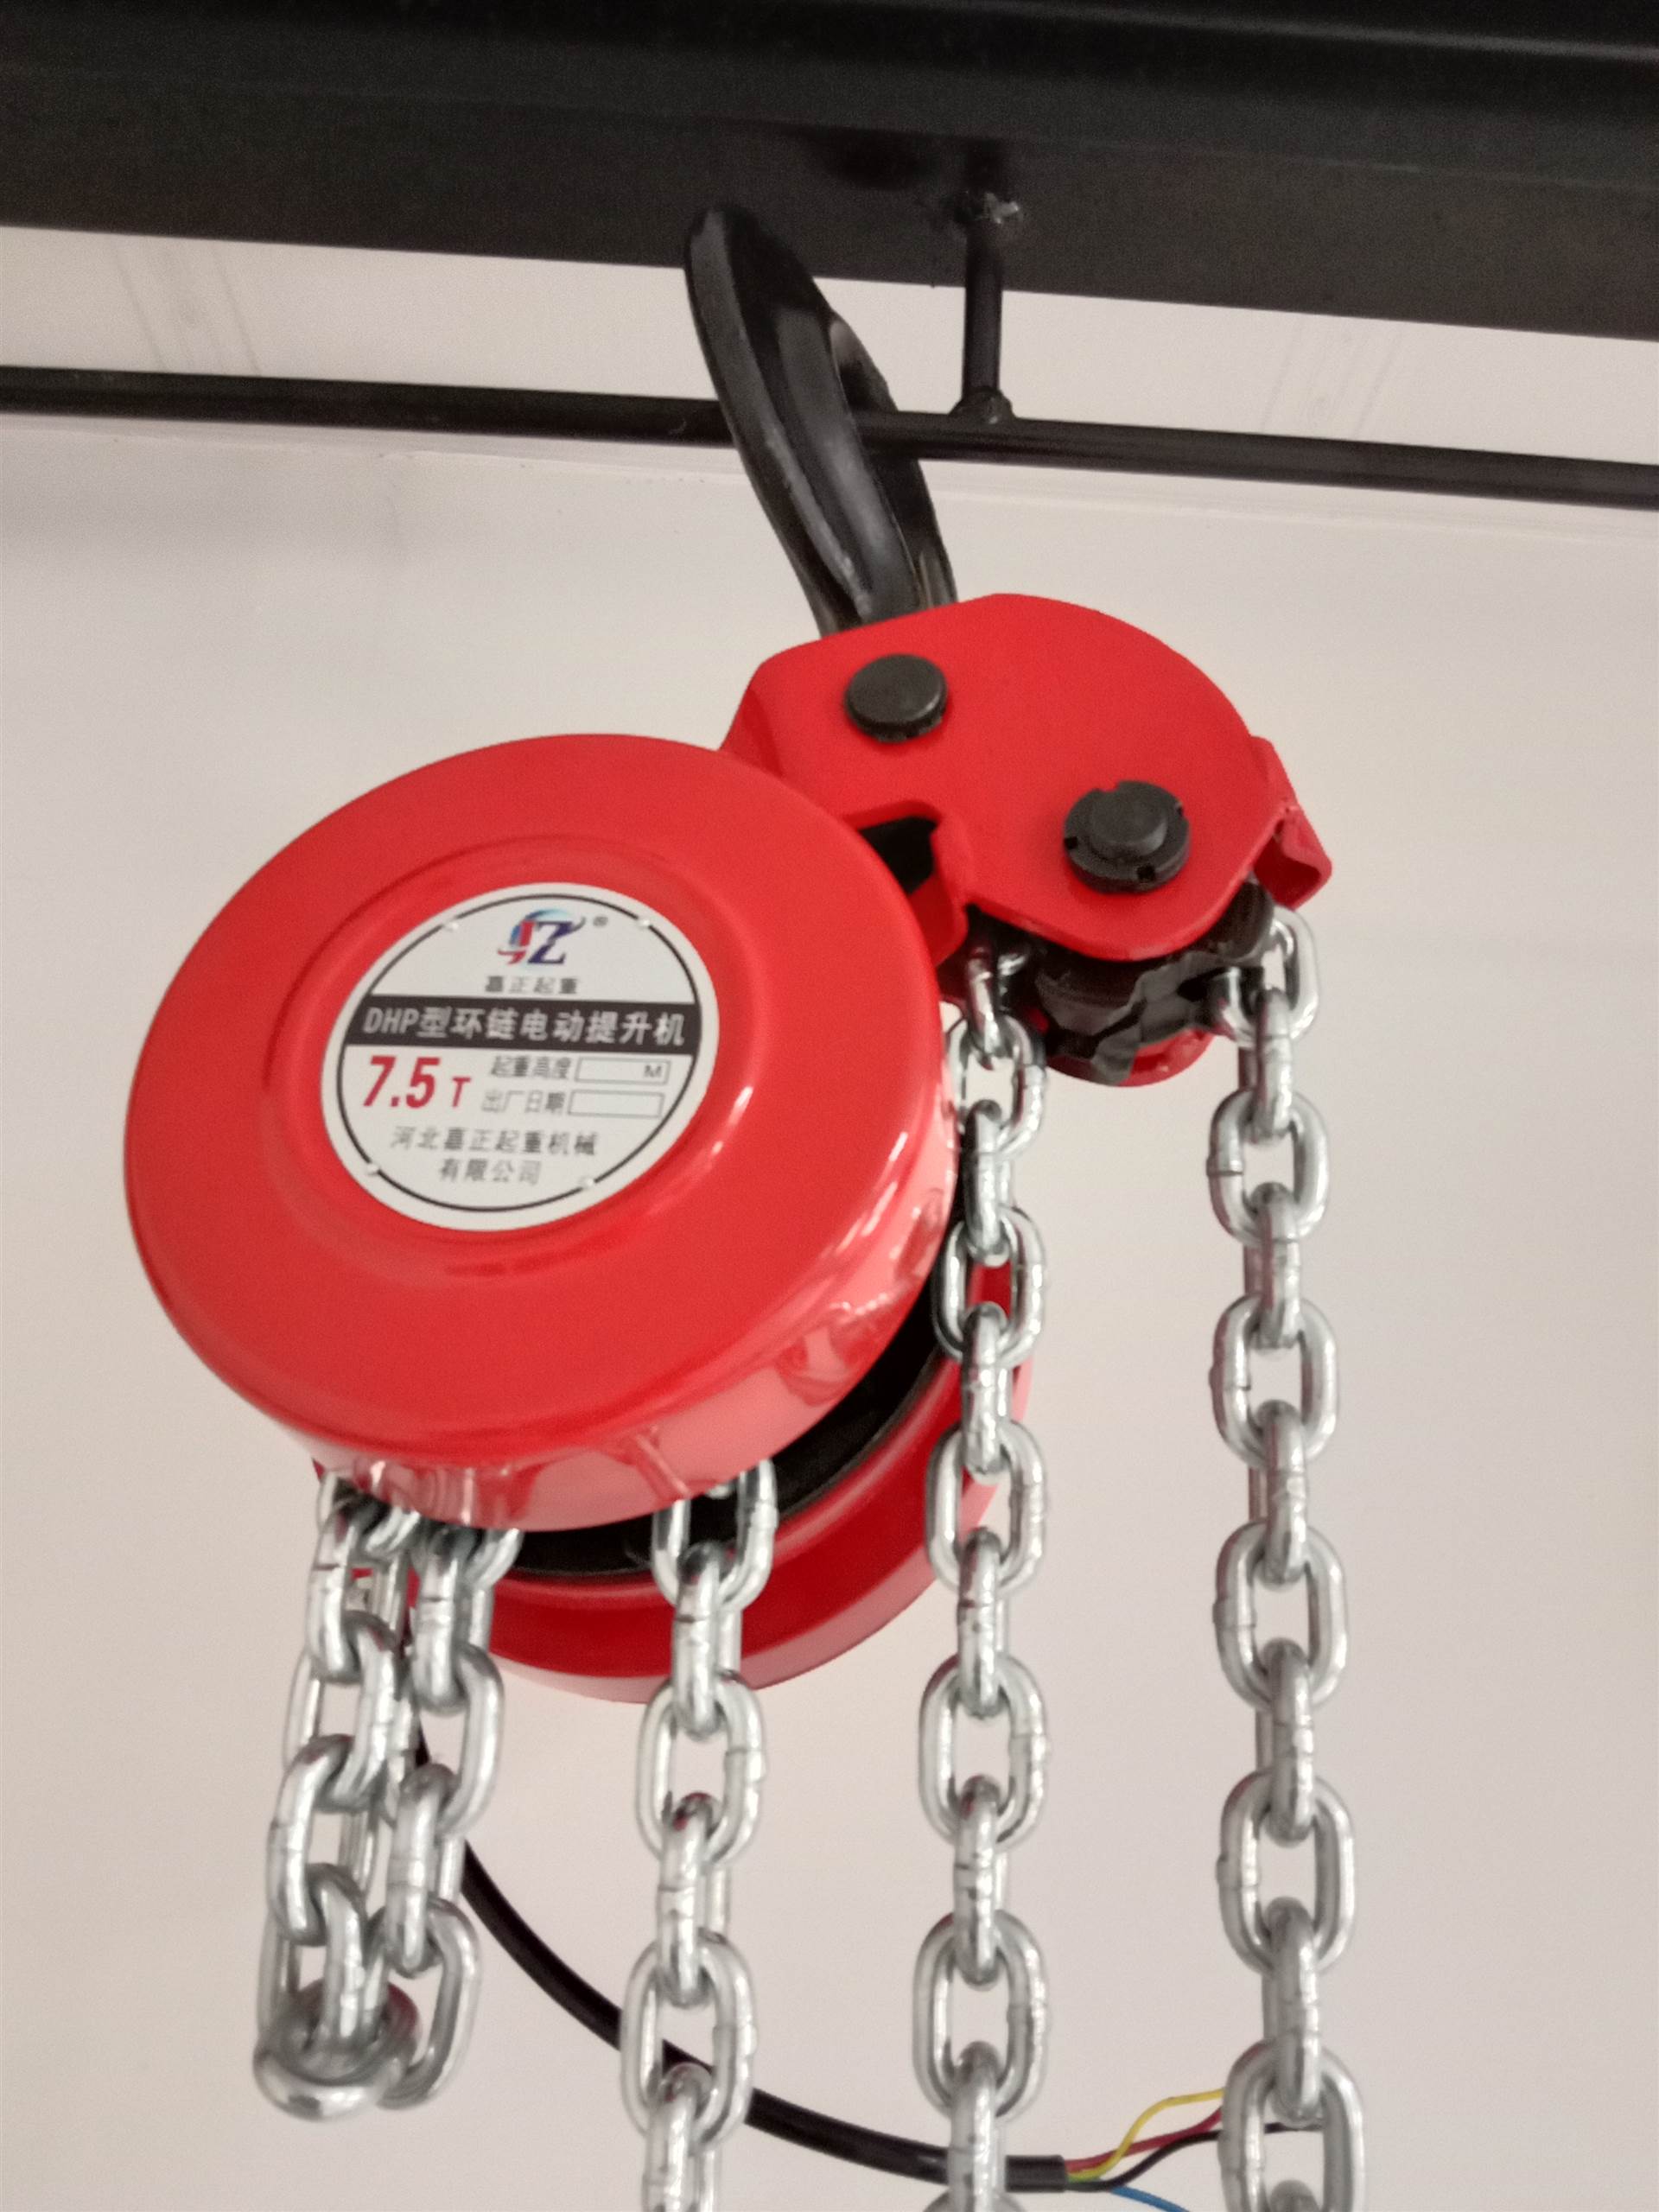 环链爬架电动葫芦-爬架葫芦的操作与使用